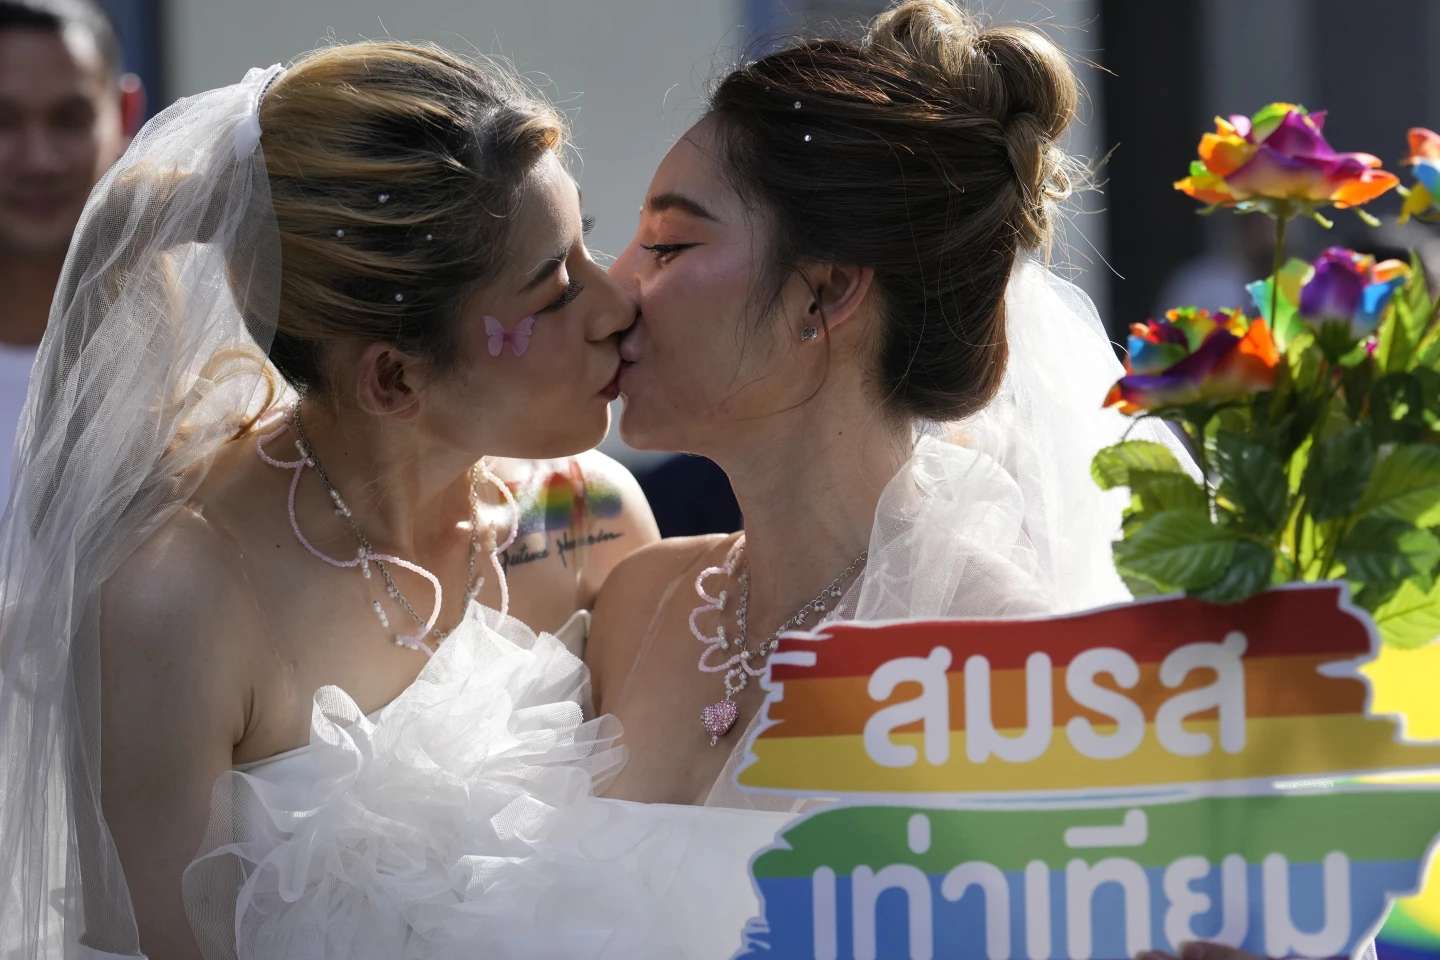 casamento entre pessoas do mesmo sexo puzzle online a partir de fotografia